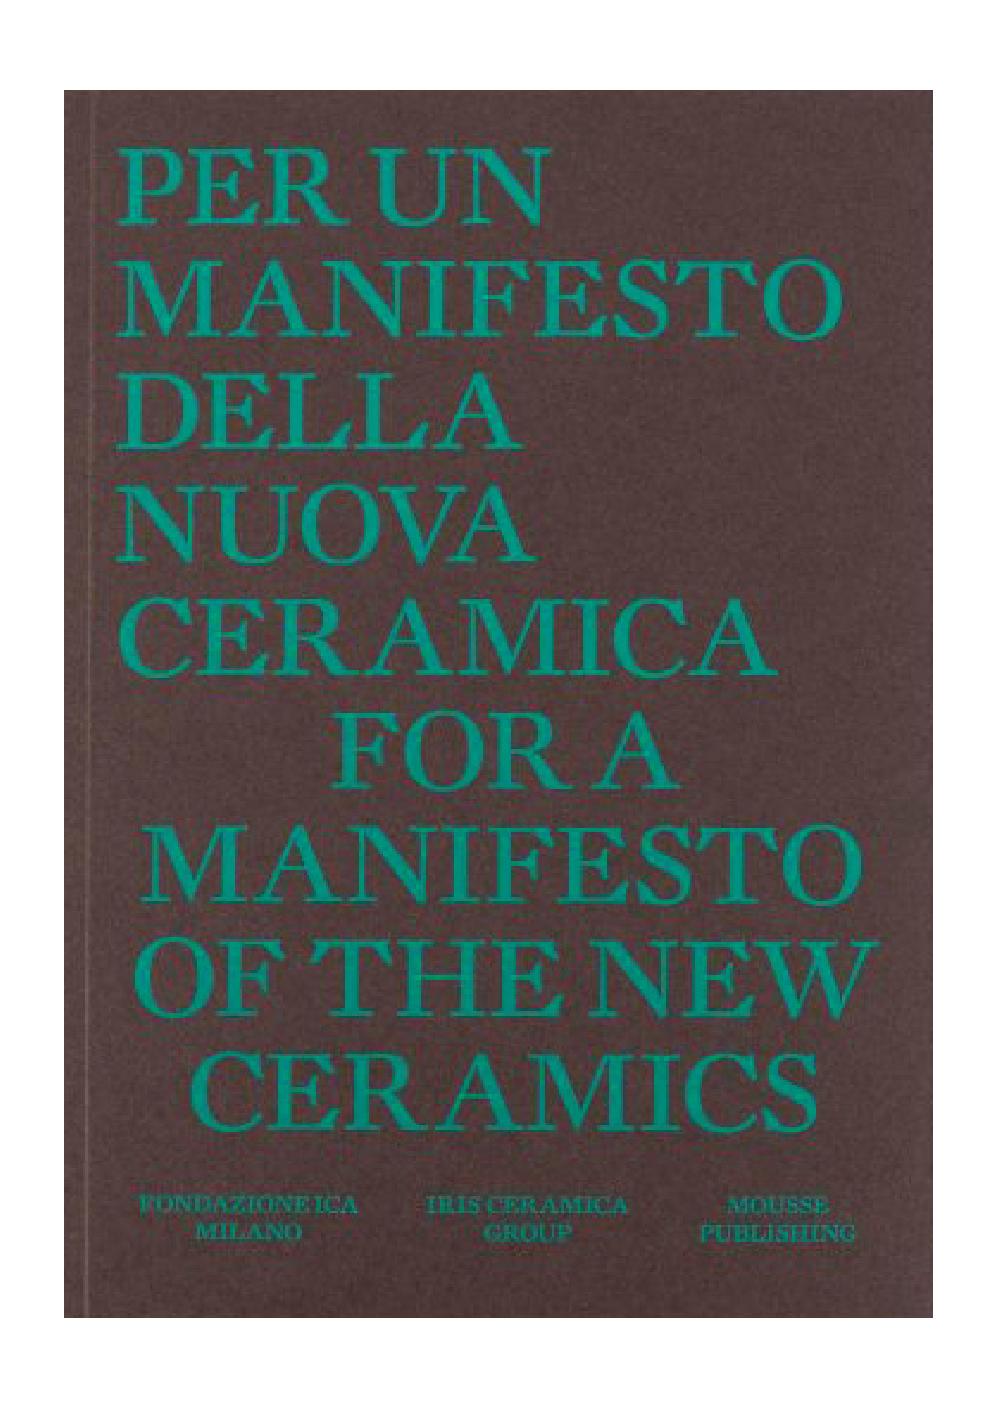 Per un Manifesto della nuova ceramica / For a Manifesto of the New Ceramics